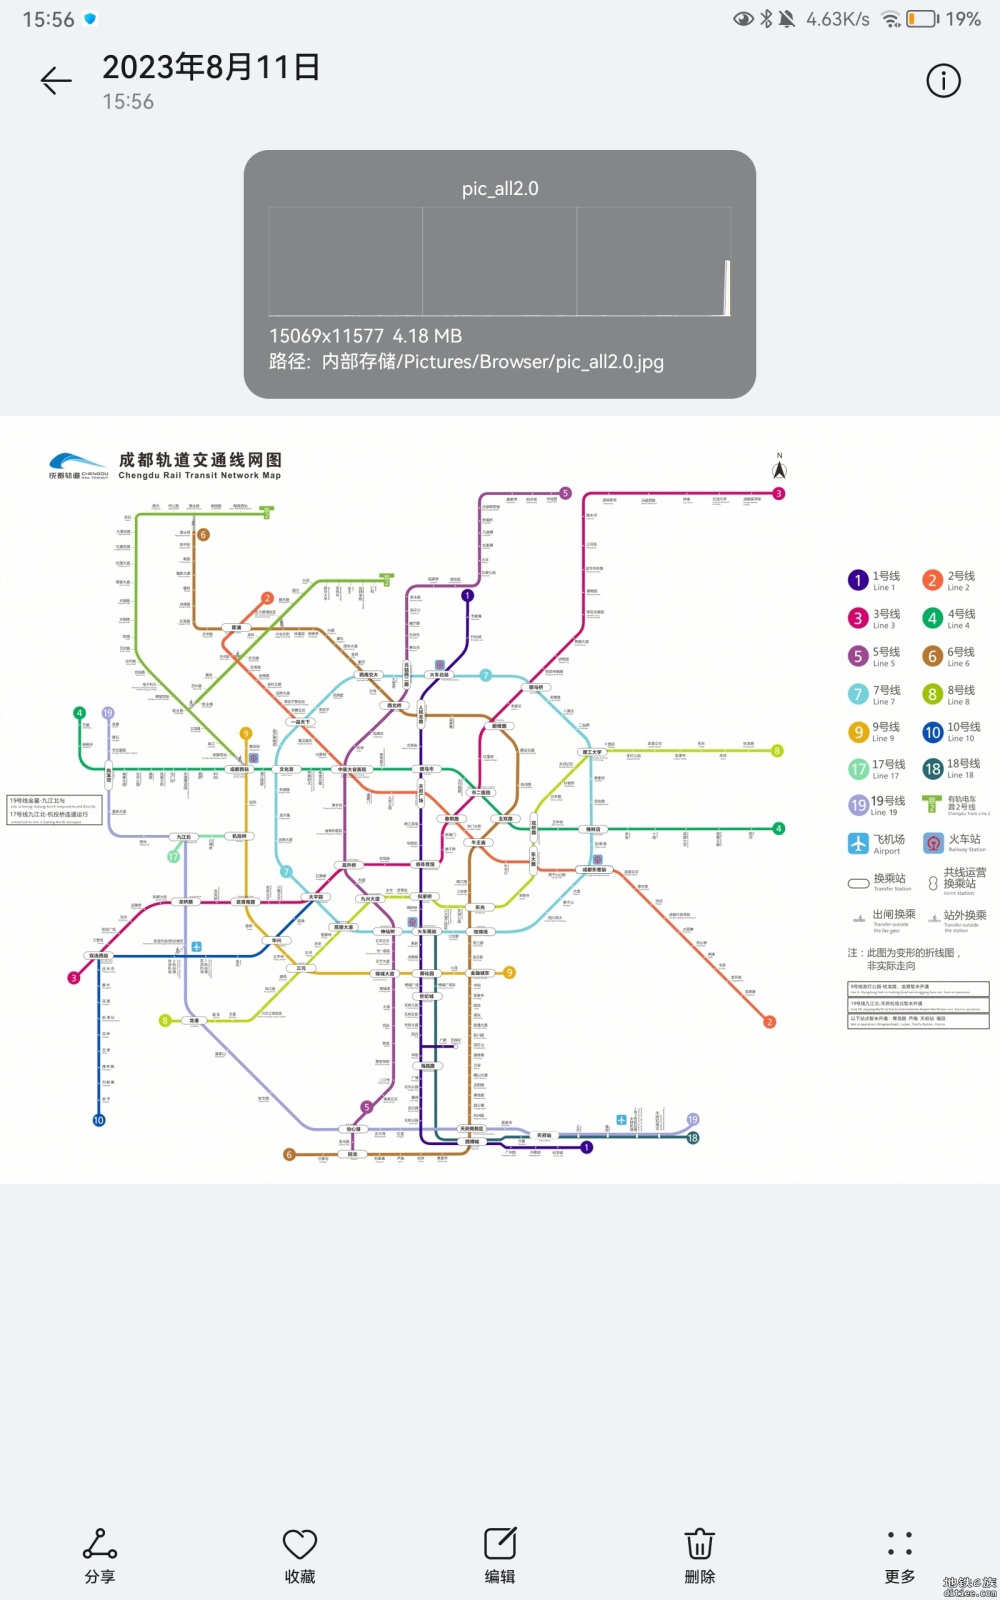 成都地铁官网更新了线路图